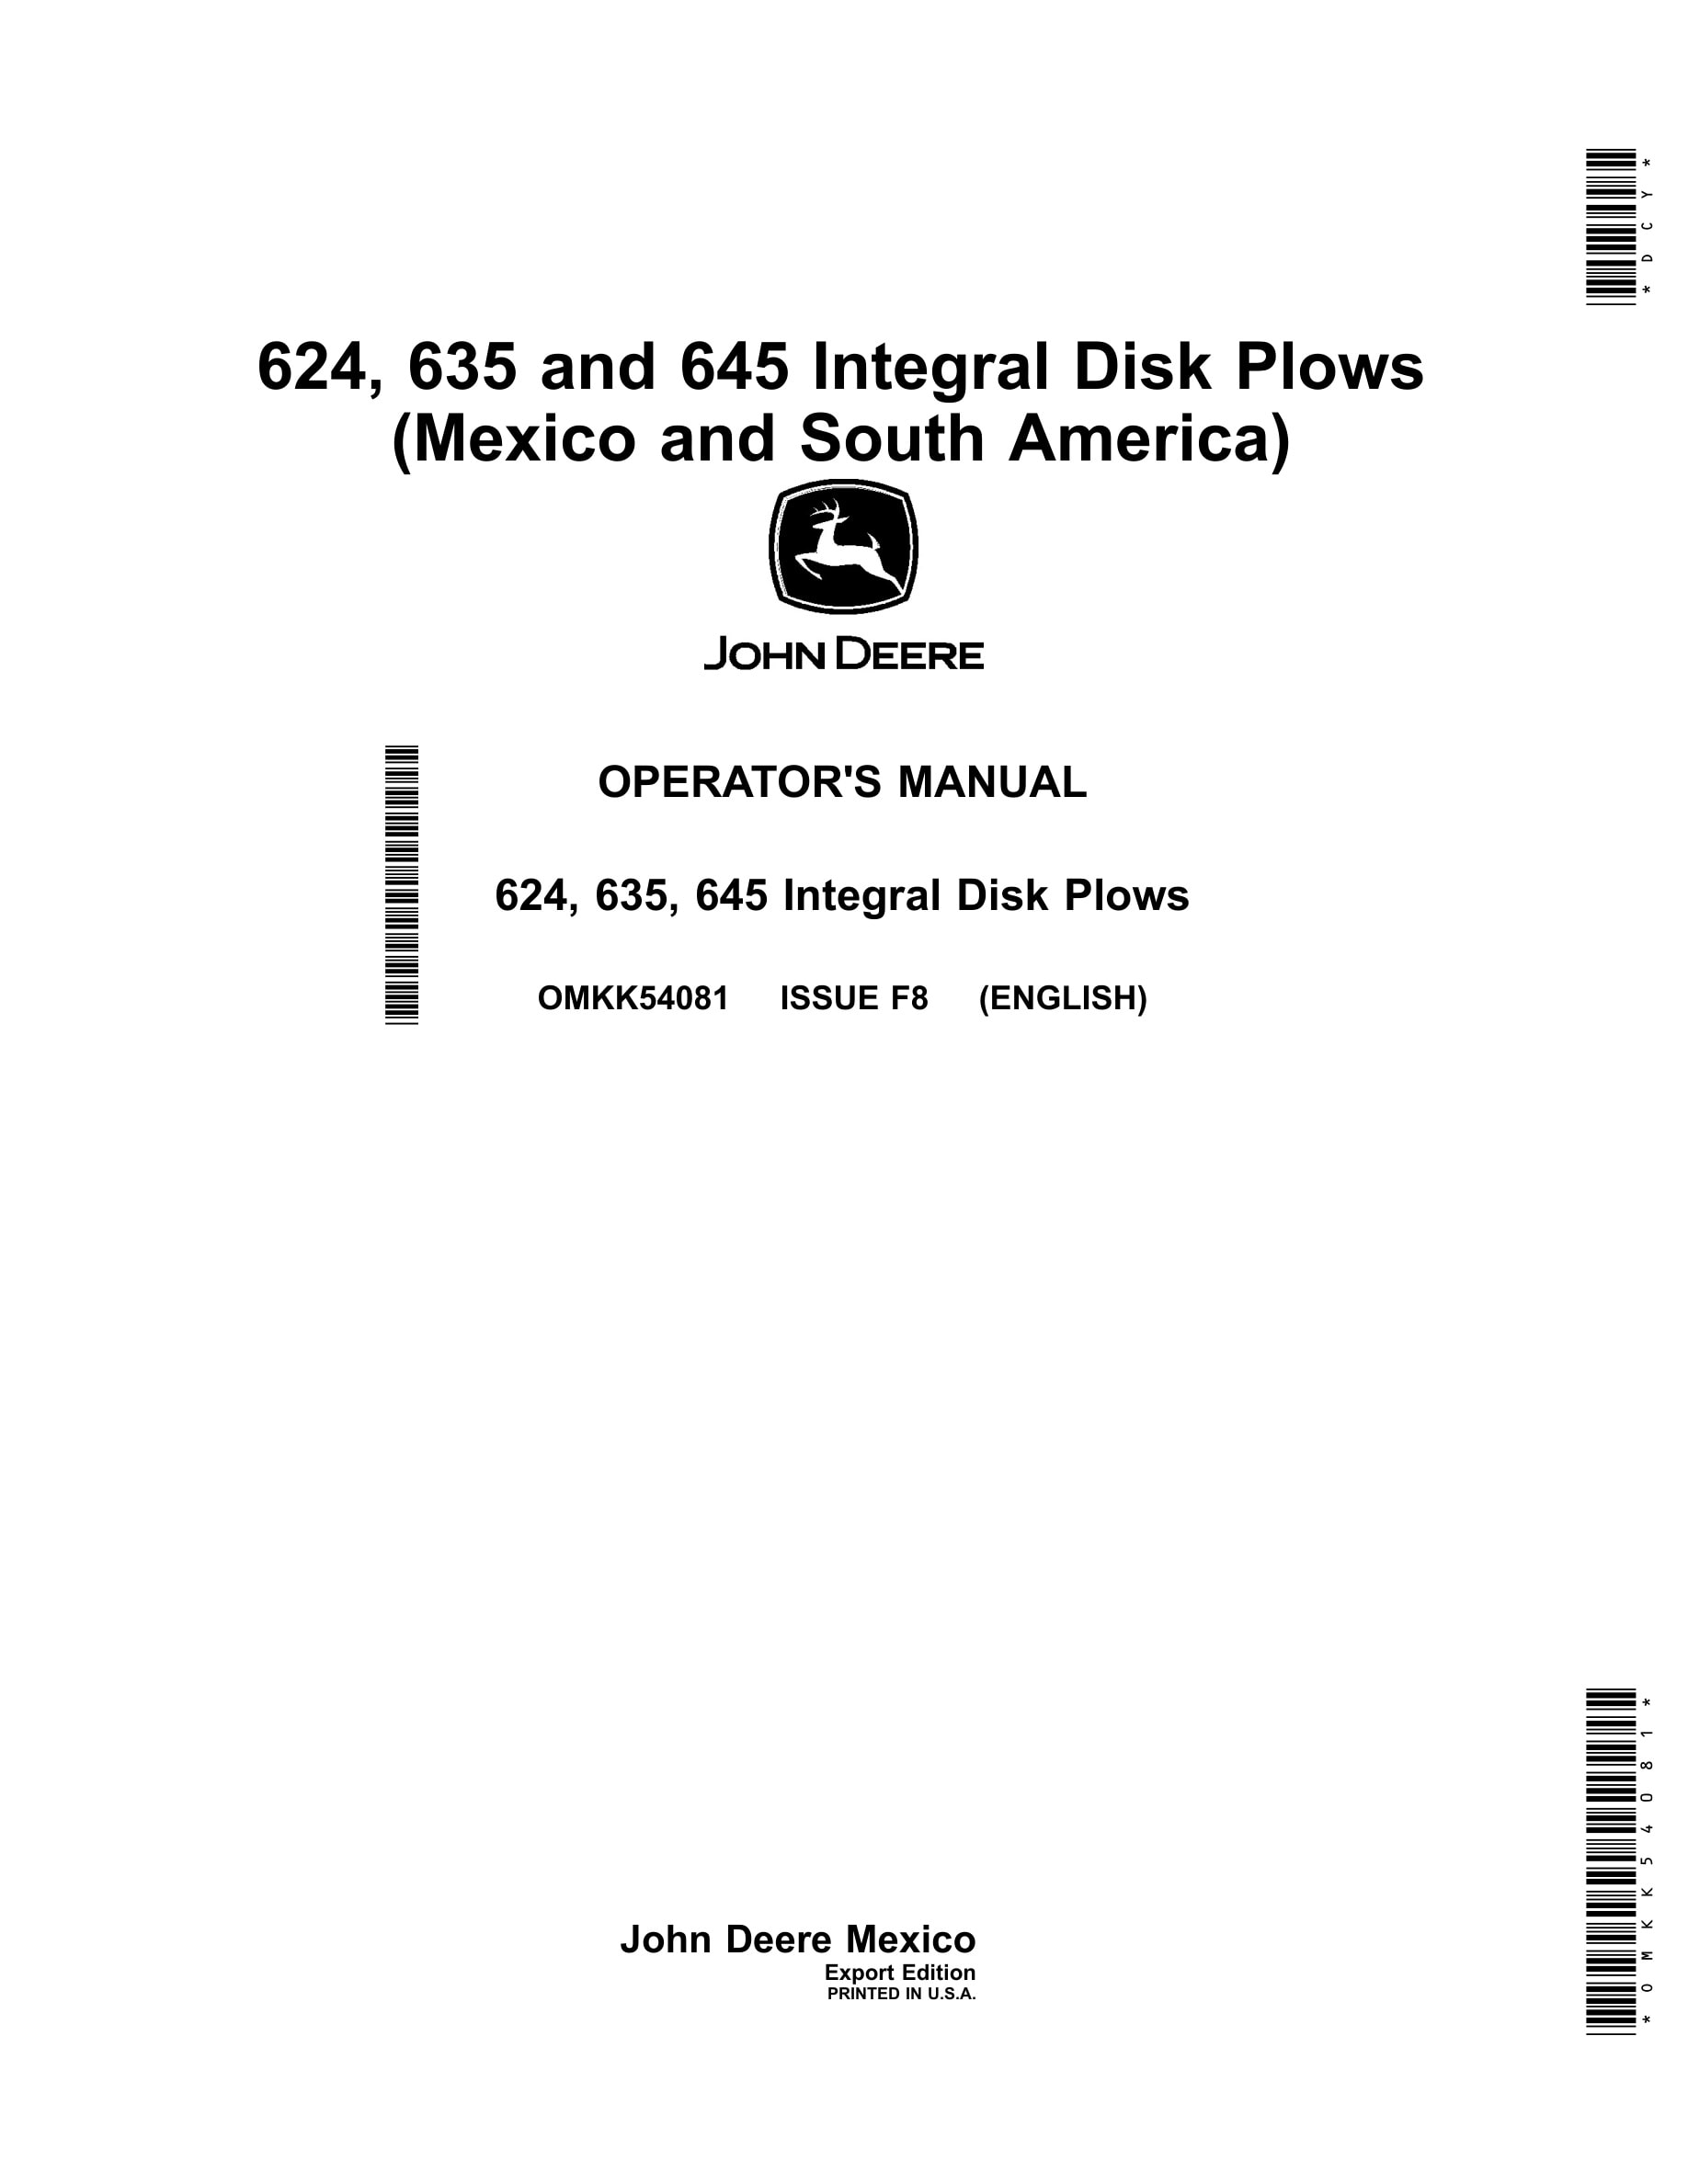 John Deere 624, 635, 645 Integral Disk Plows Operator Manual OMKK54081-1